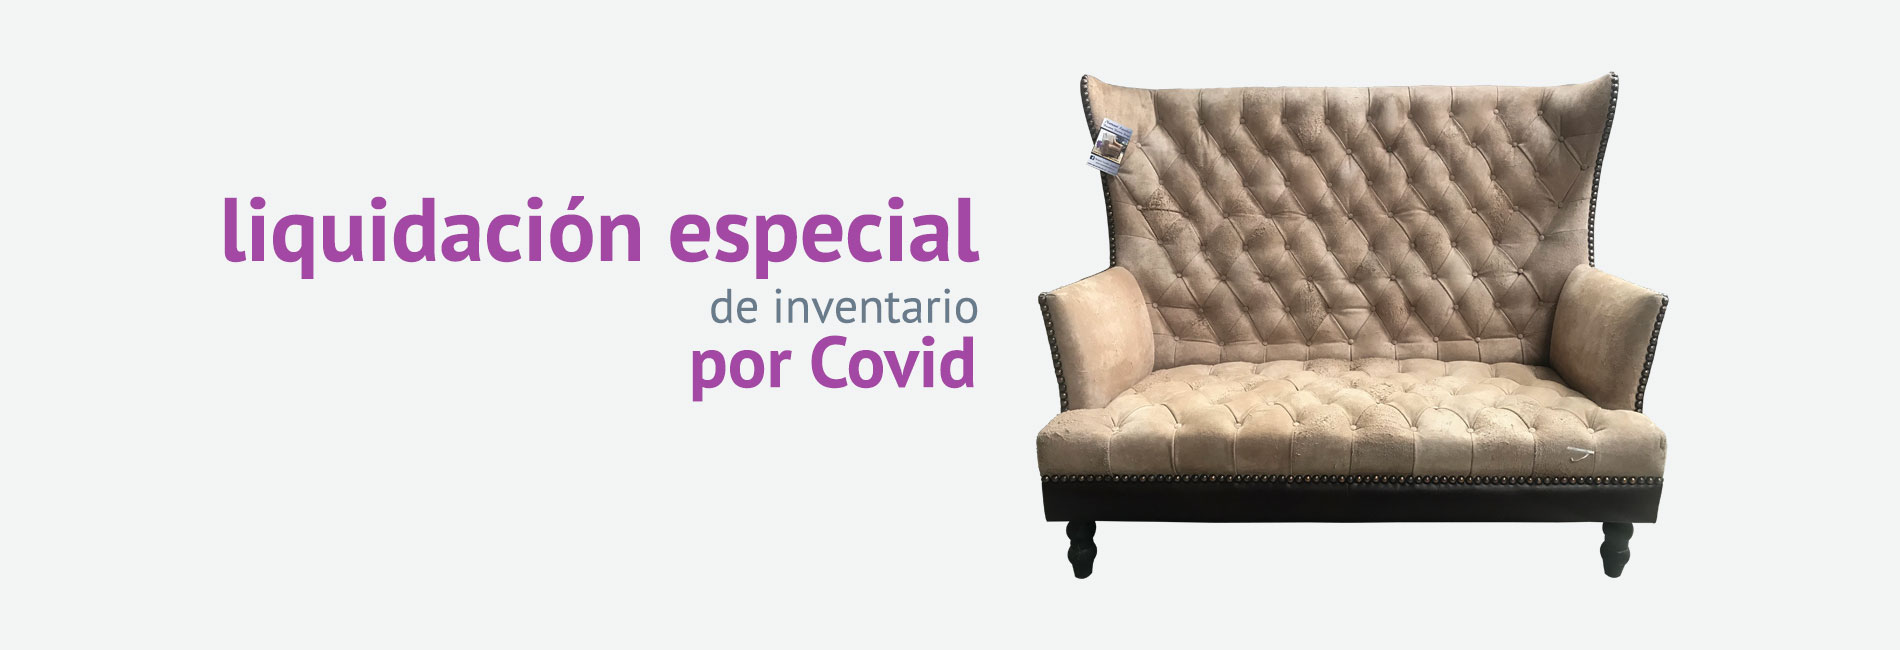 Liquidación especial de inventario por Covid | Natural Leather